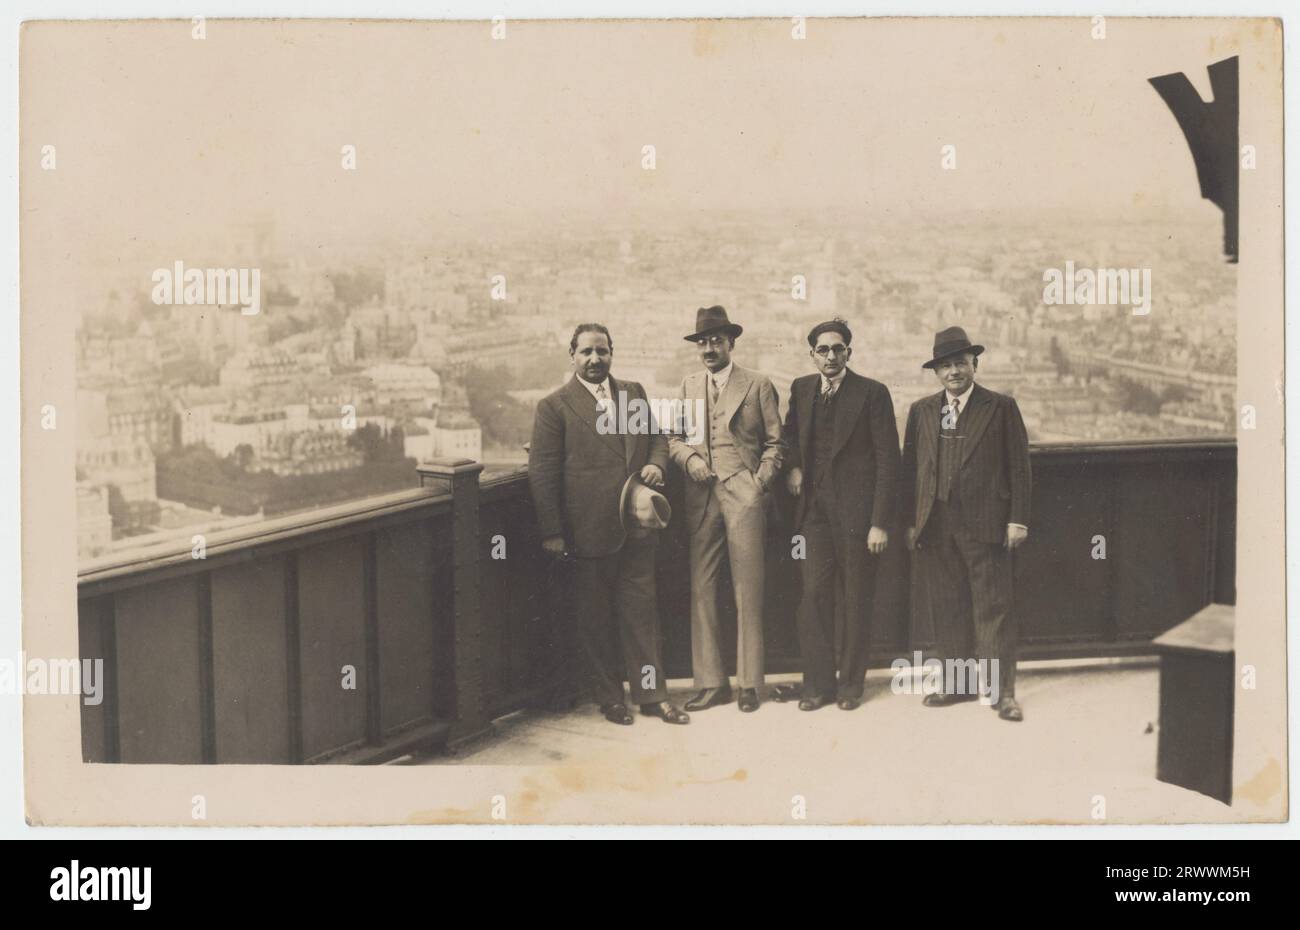 Vier gut gekleidete Männer auf der Aussichtsplattform mit Blick auf Paris. 13 - Sir Sikander und andere (einer ist Daultana I Believe) Eiffelturm, Paris, September 1934 Mumtaz Daulatana war ein punjabi-Politiker, der die pakistanische Bewegung in Britisch-Indien unterstützte. Stockfoto